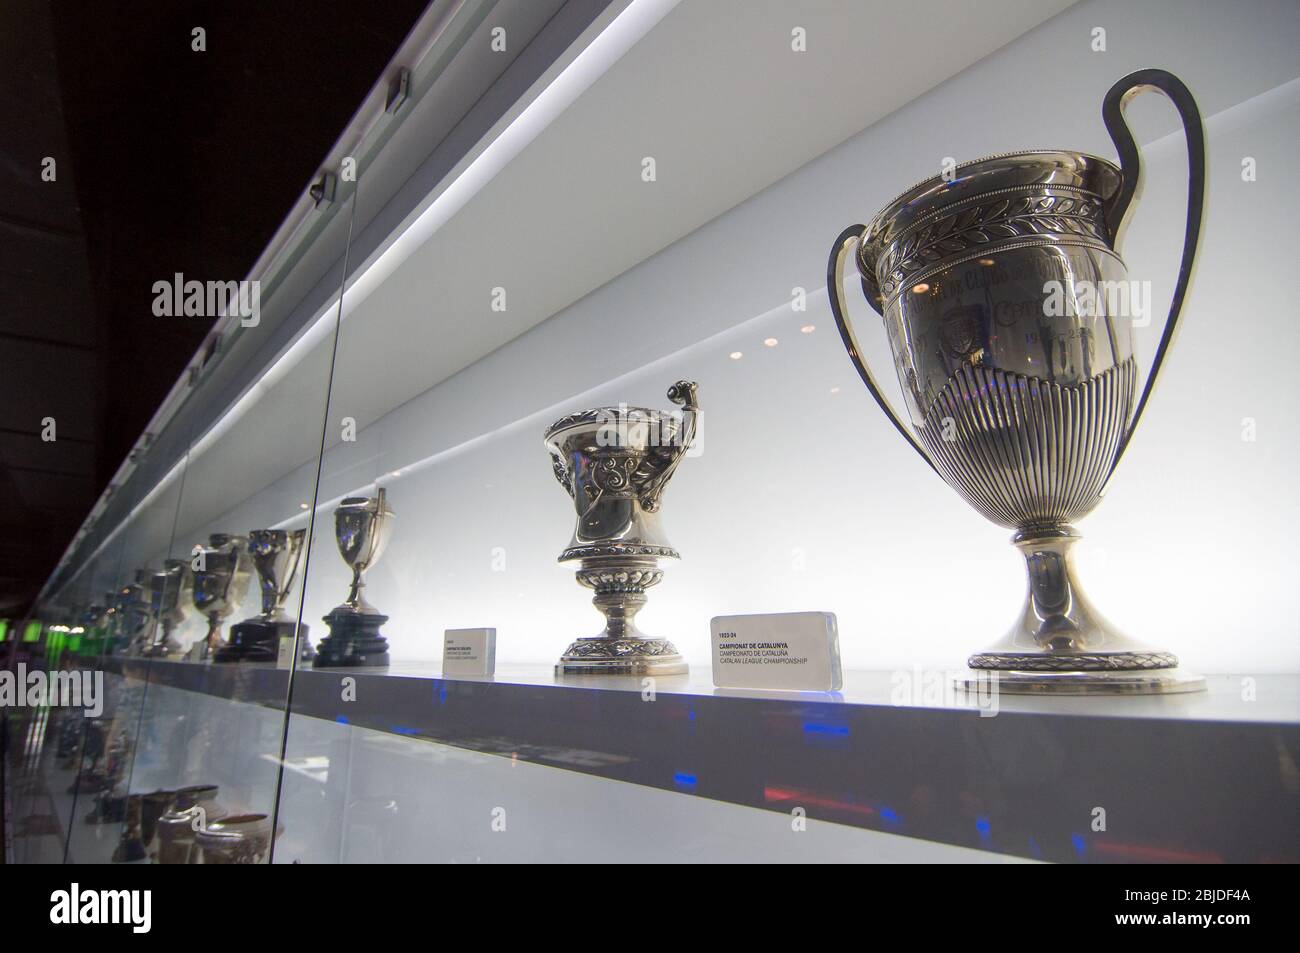 Barcelone, Espagne - 22 septembre 2014 : une des galeries de trophées au musée du FC Barcelone. Coupe de championnat de Ligue catalane. Camp Nou, Barcelone, S Banque D'Images